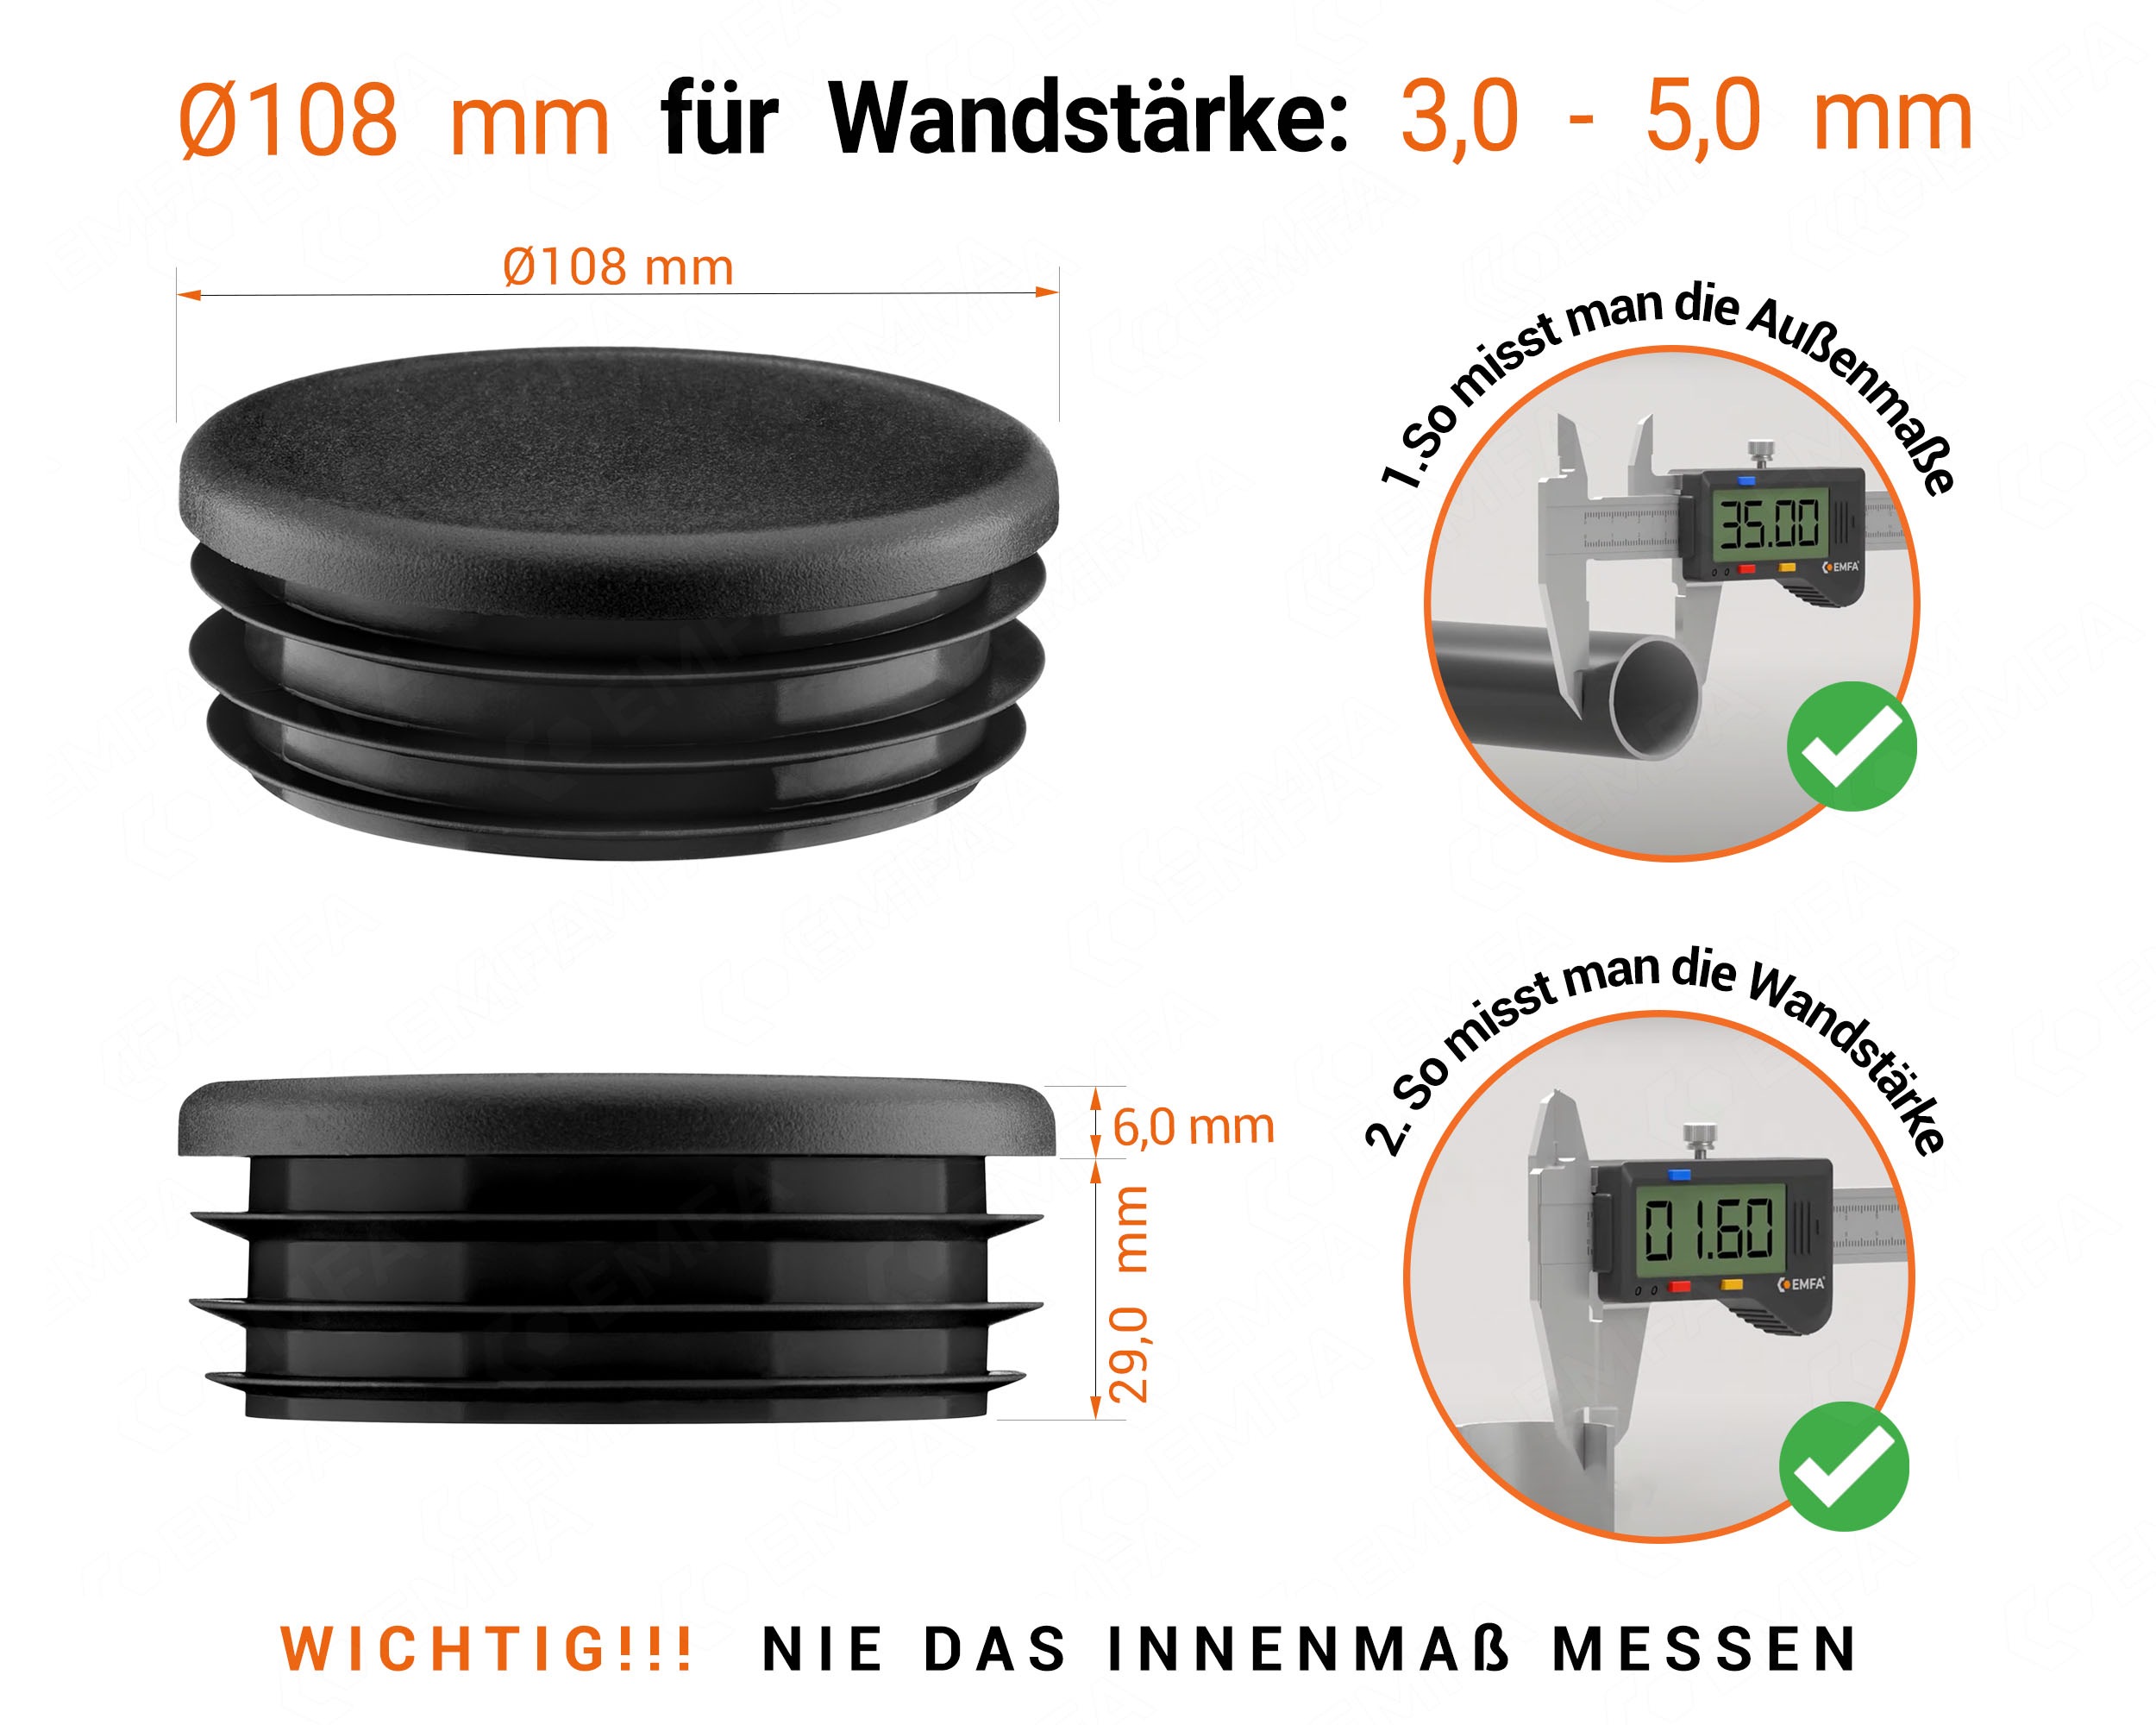 Schwarze Endkappe für Rundrohre in der Größe 108 mm mit technischen Abmessungen und Anleitung für korrekte Messung